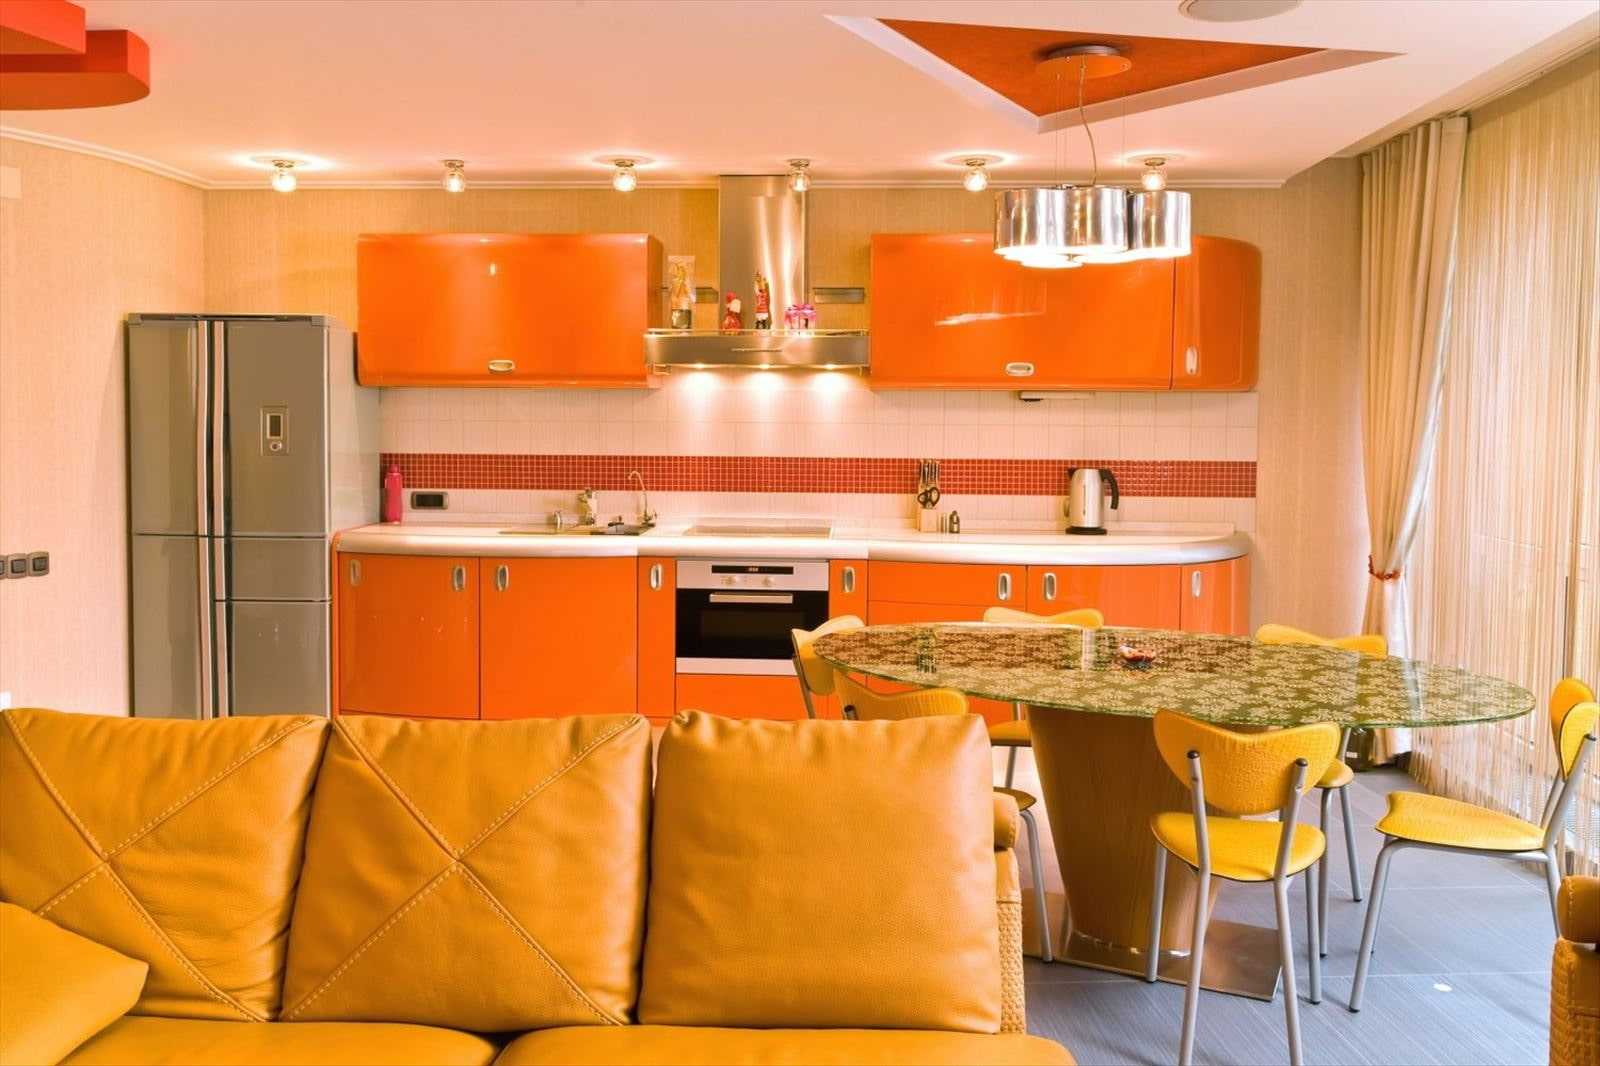 Выбираем кухонный гарнитур оранжевого цвета и учимся сочетать его с другими цветами